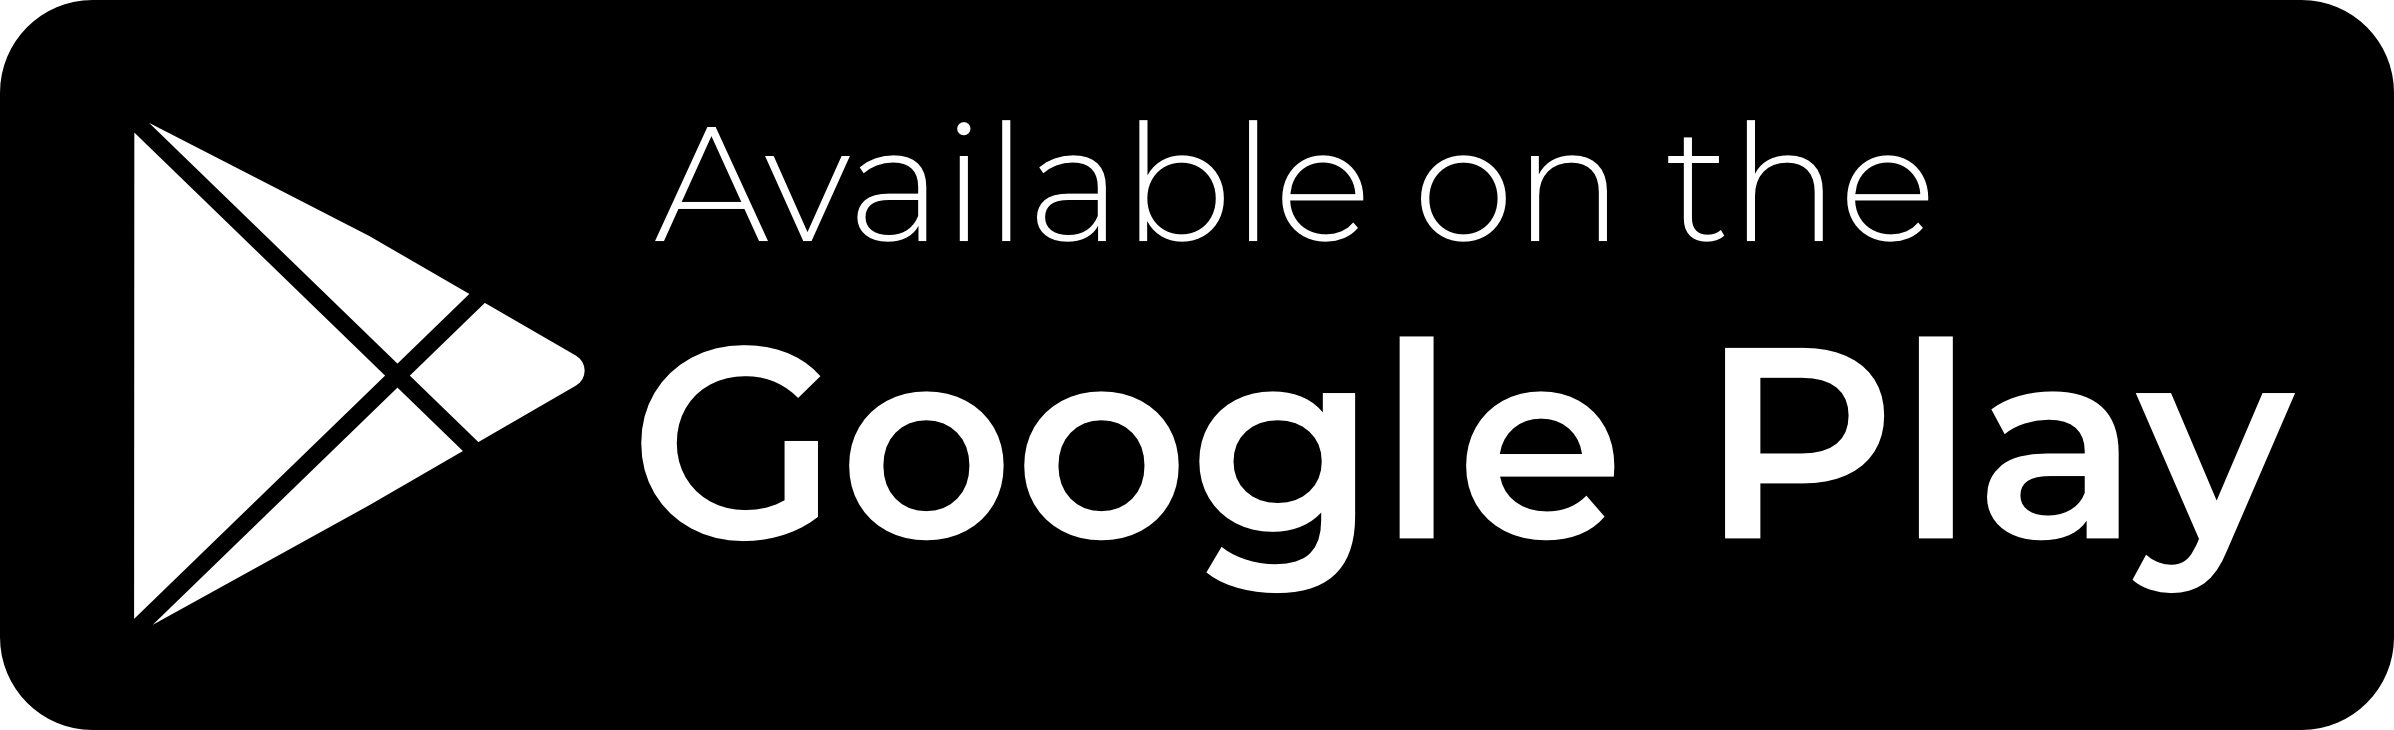 UJ APP Available On Google Play Vector